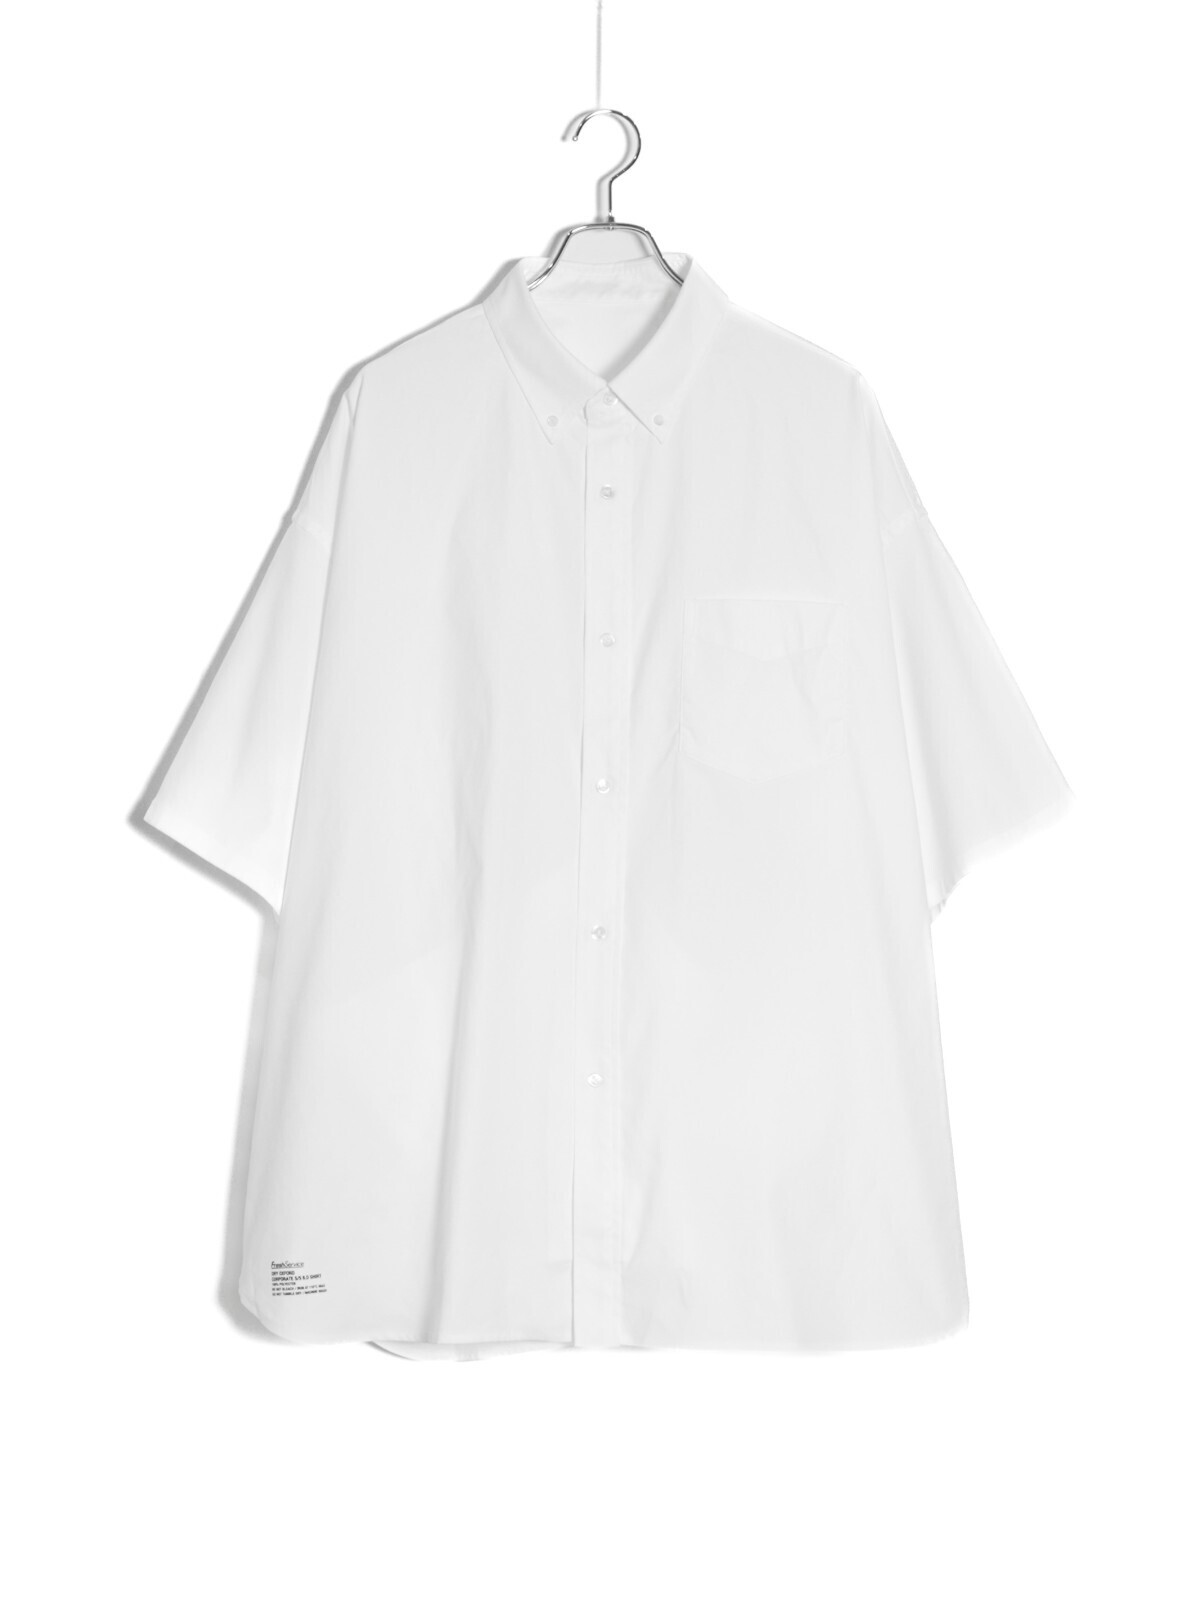 フレッシュサービス メンズ ドライオックスフォード コーポレートボタンダウンシャツ(半袖) 写真1